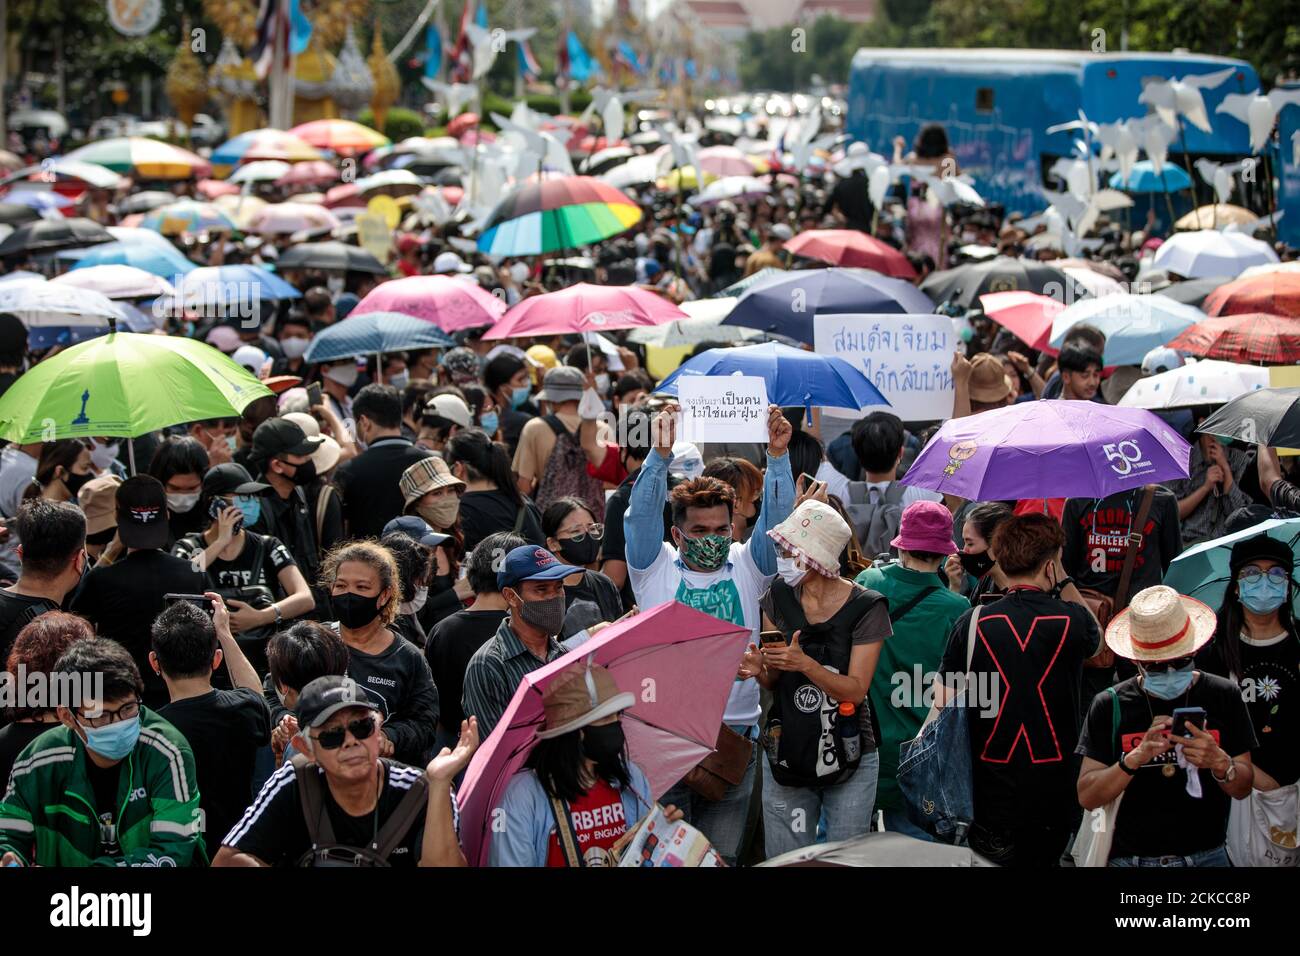 Migliaia di manifestanti partecipano a una manifestazione contro il governo al Democracy Monument di Bangkok, Thailandia, domenica 16 agosto 2020. Tra le richieste dei manifestanti vi sono richieste di riforma della monarchia della Thailandia. (Foto - Jack Taylor) Foto Stock